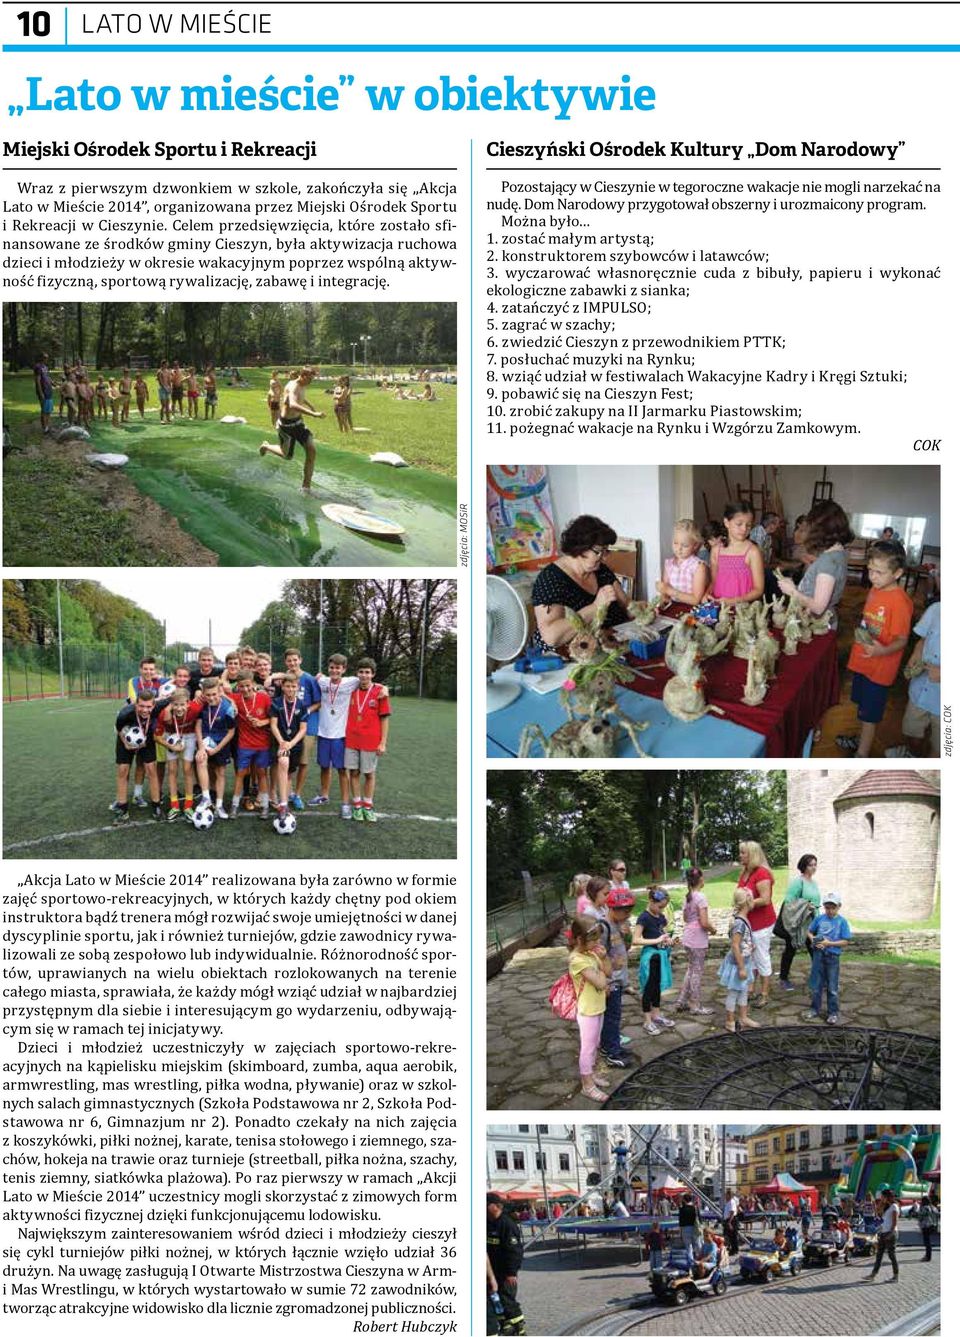 Celem przedsięwzięcia, które zostało sfinansowane ze środków gminy Cieszyn, była aktywizacja ruchowa dzieci i młodzieży w okresie wakacyjnym poprzez wspólną aktywność fizyczną, sportową rywalizację,